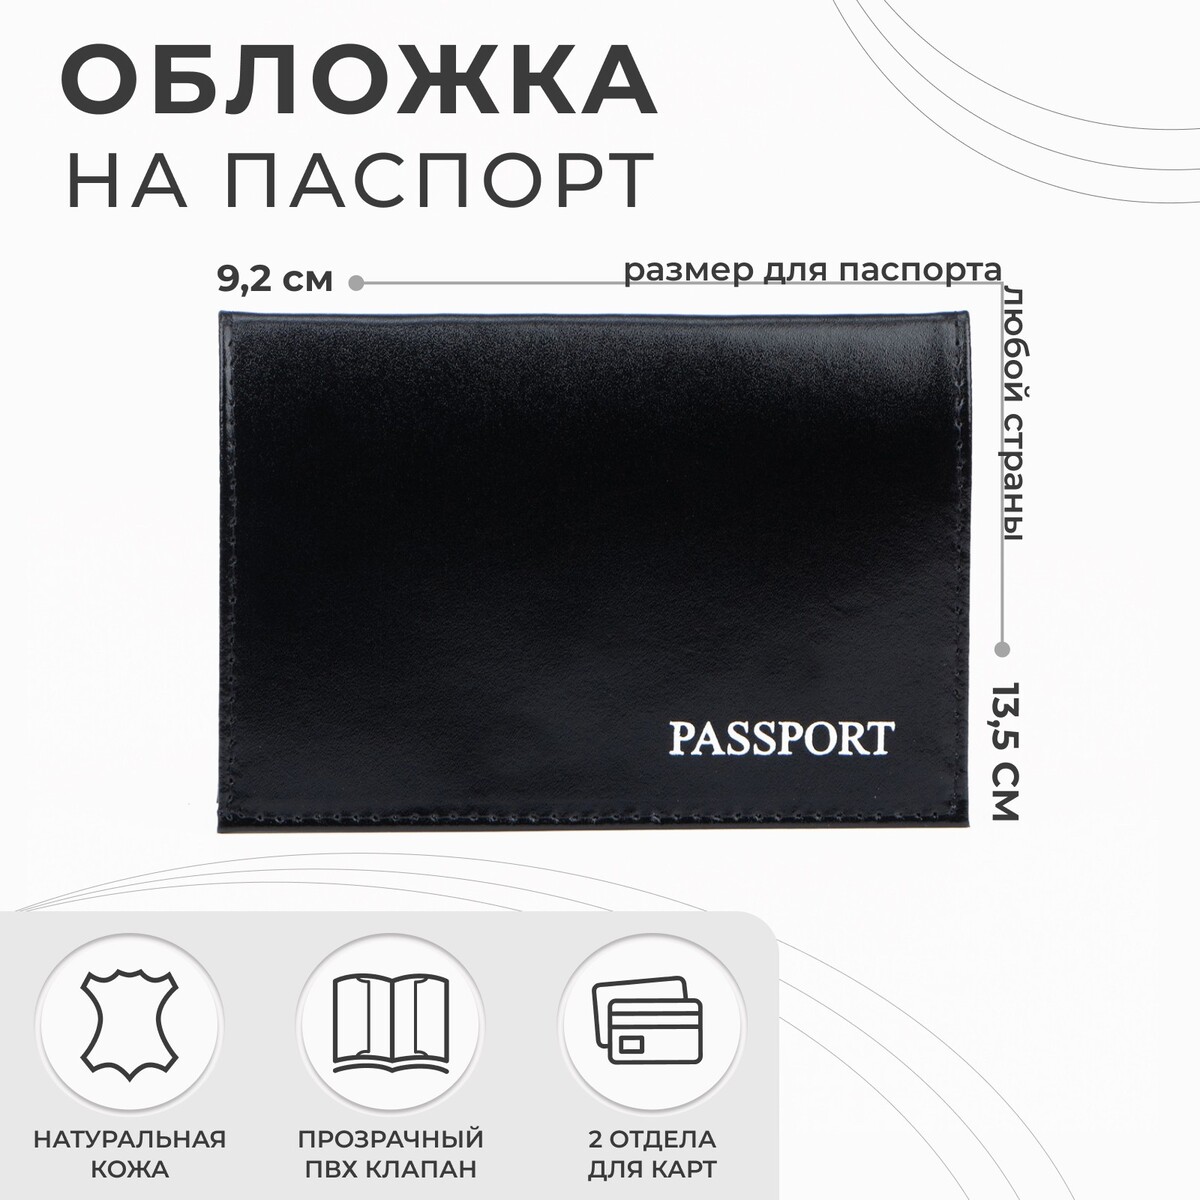 Обложка для паспорта, тиснение, цвет черный